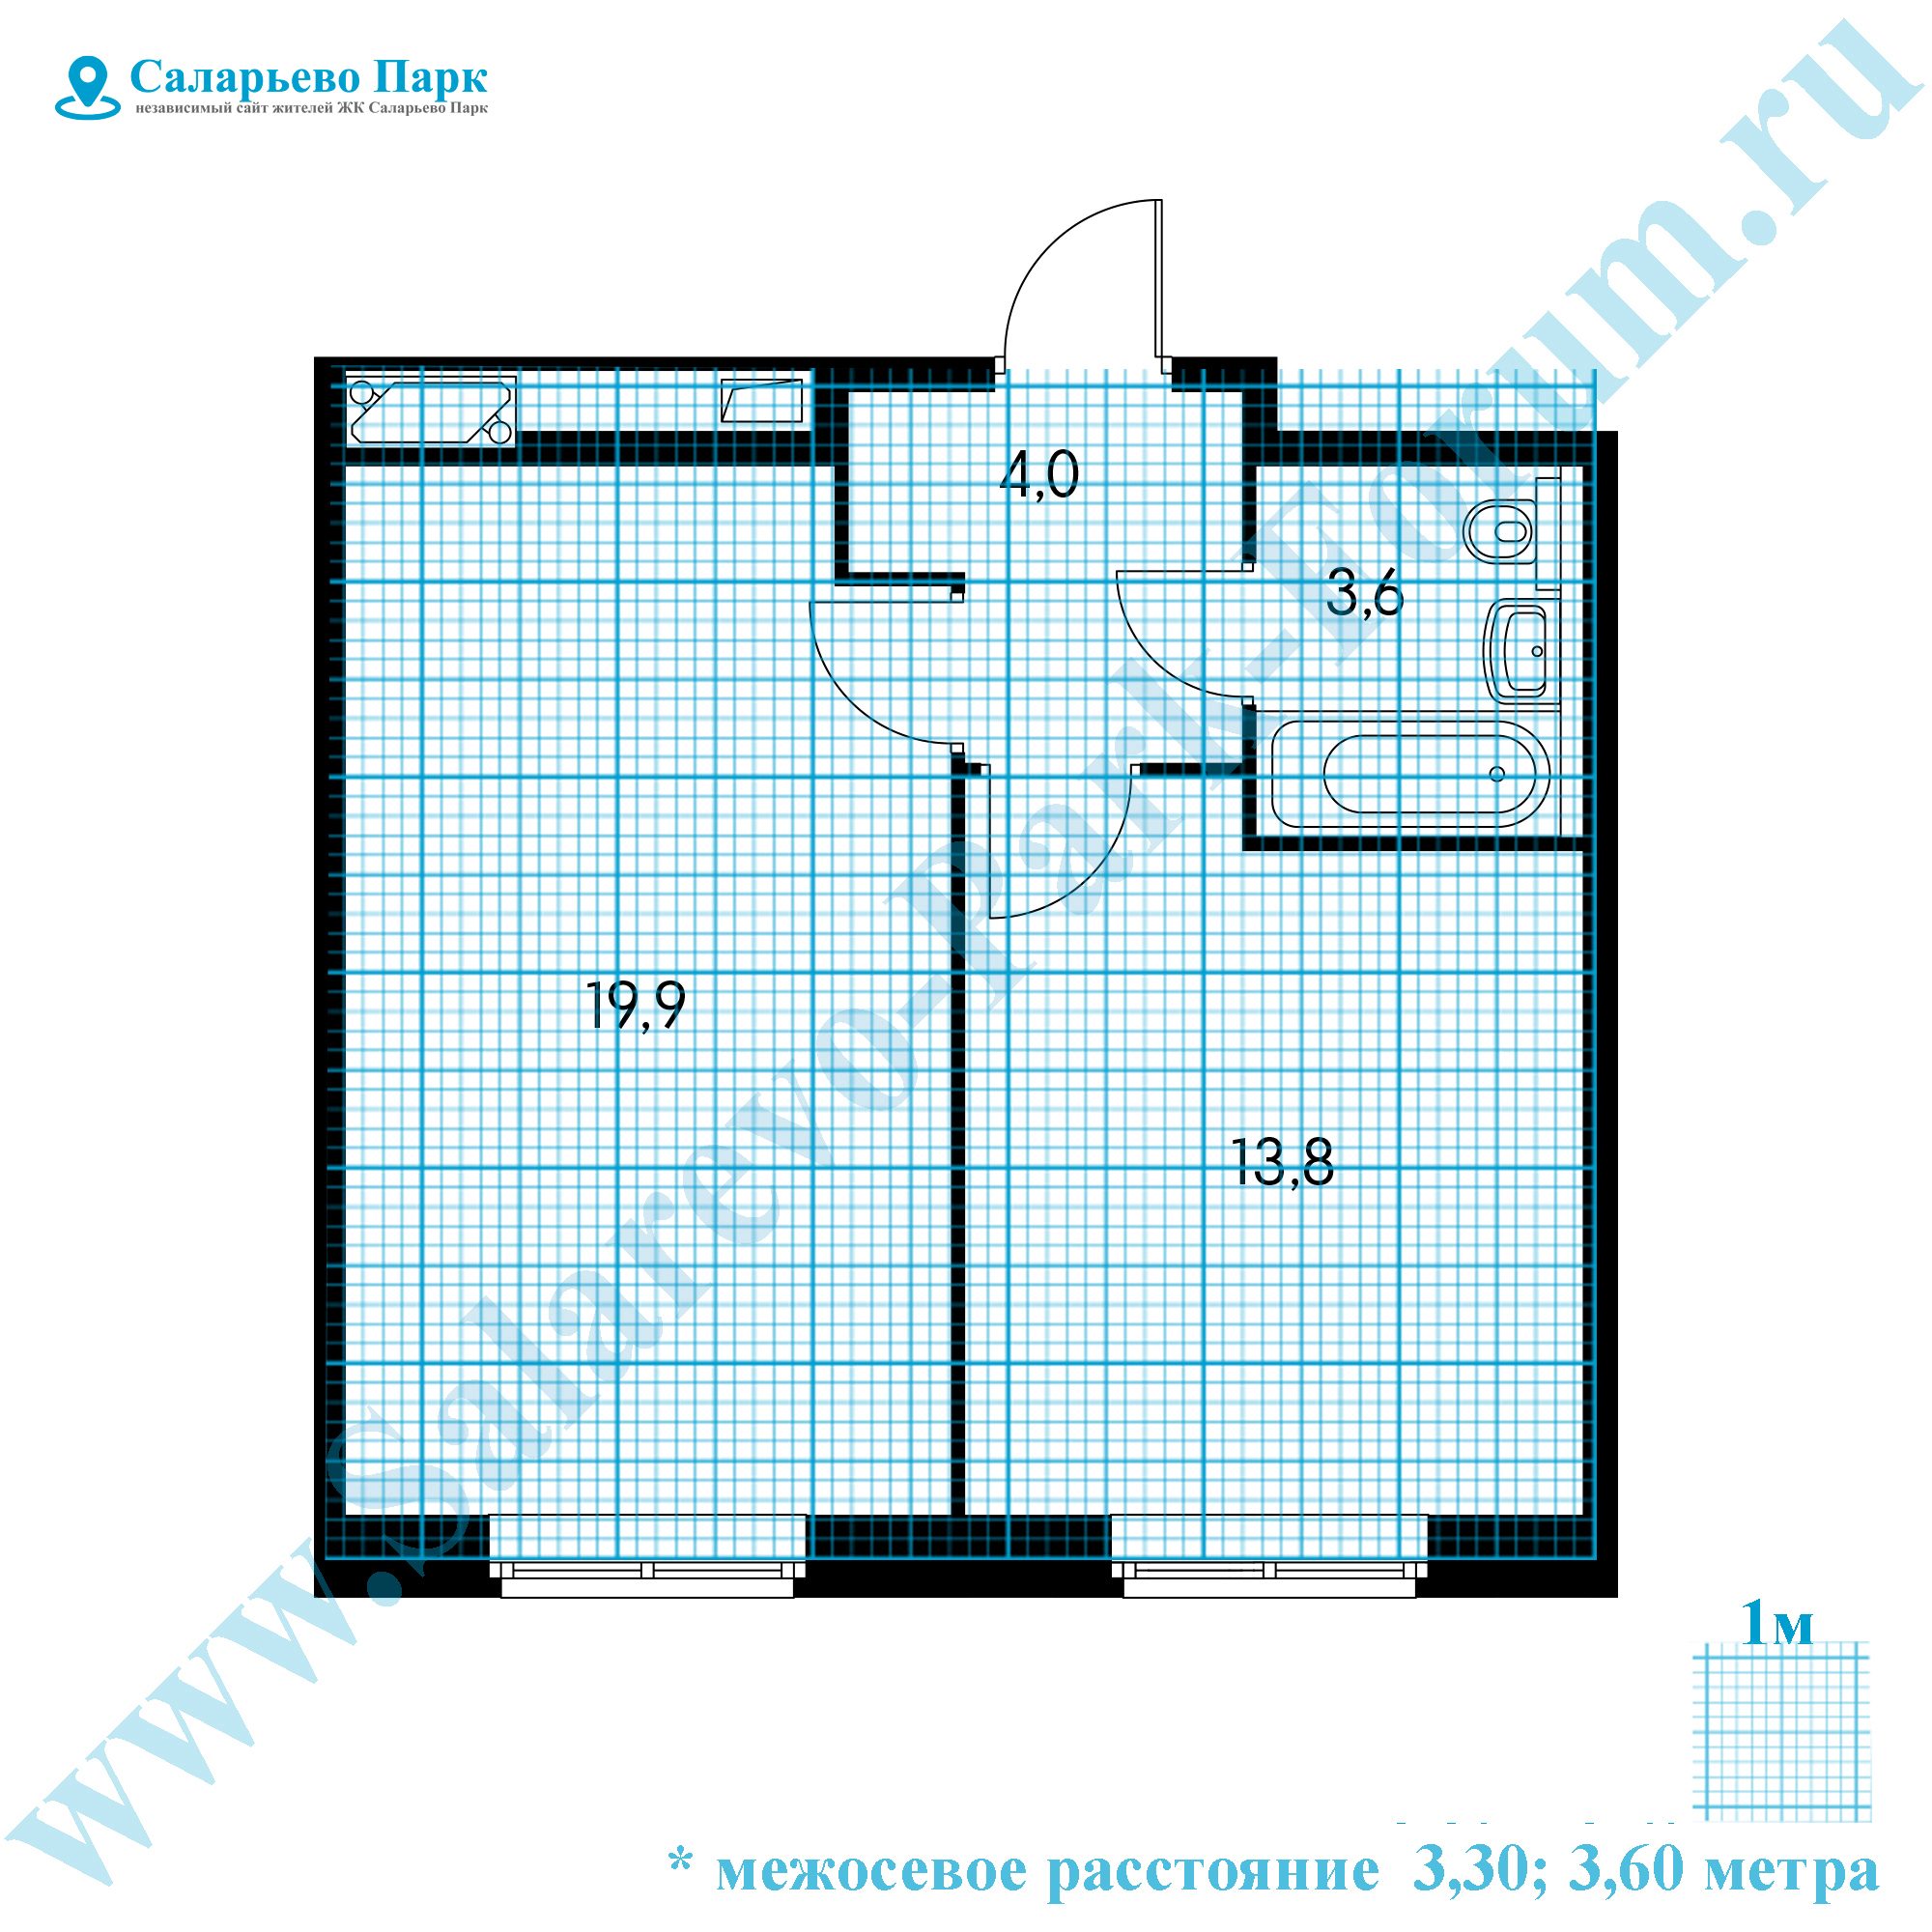 ЖК Саларьево Парк: планировка однокомнатной квартиры с размерами